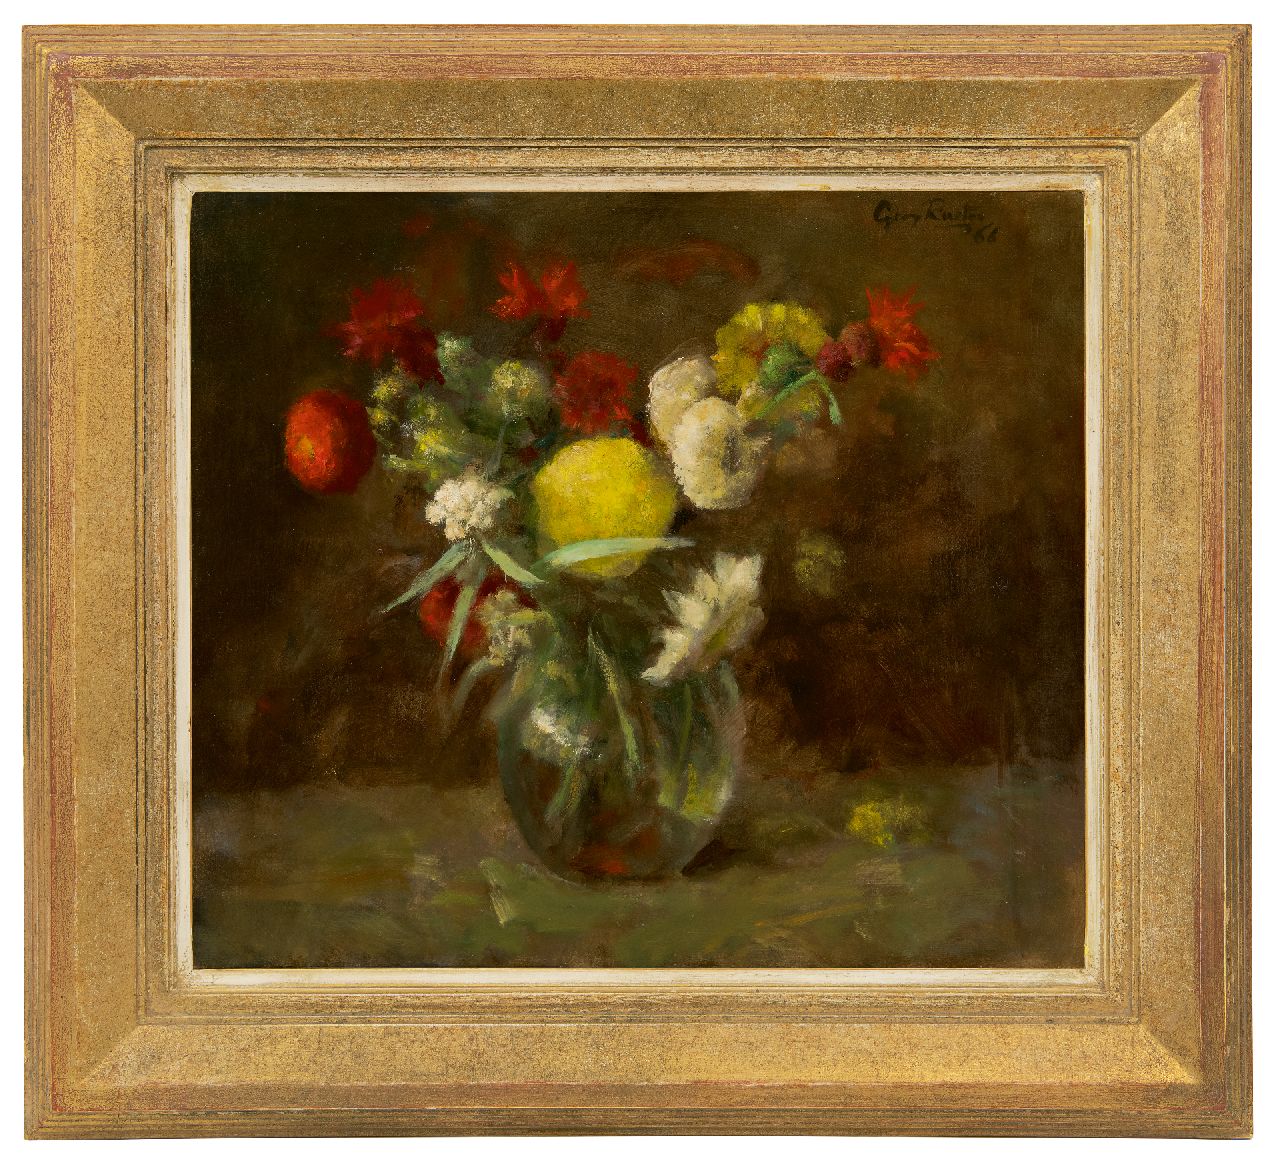 Rueter W.C.G.  | Wilhelm Christian 'Georg' Rueter | Schilderijen te koop aangeboden | Bloemen in glazen vaas, olieverf op doek 39,8 x 45,0 cm, gesigneerd rechtsboven en gedateerd '66